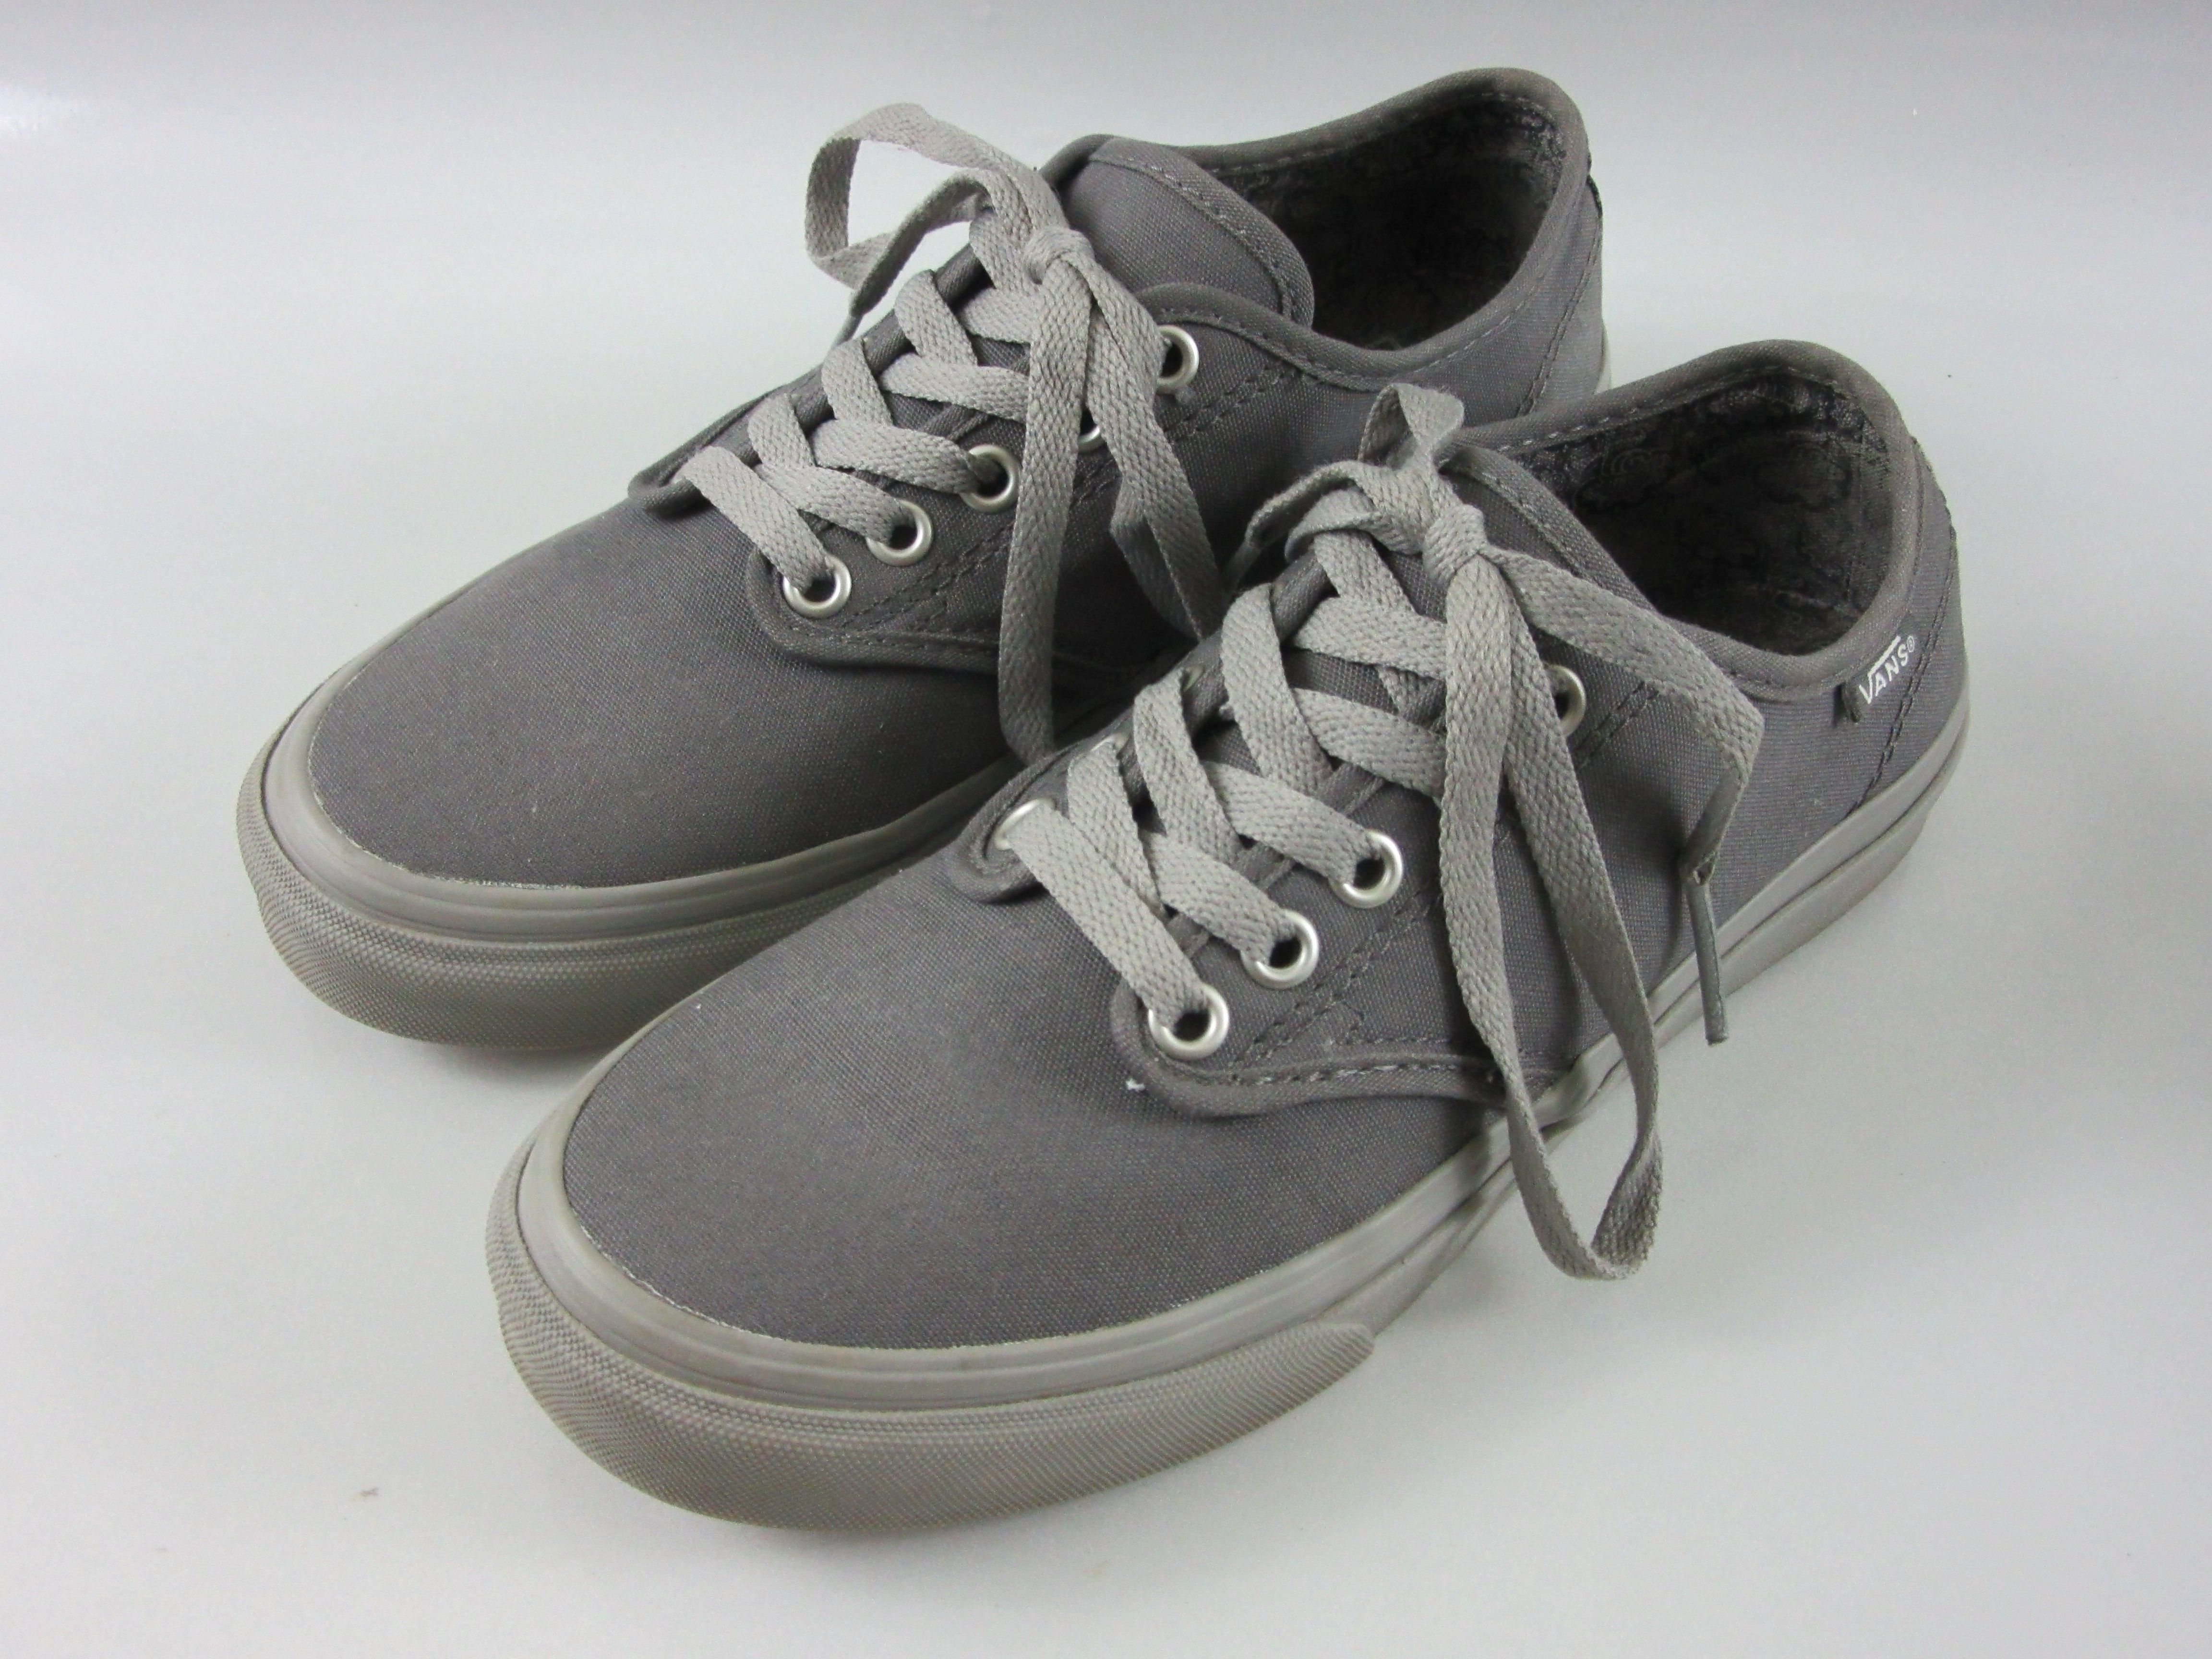 Vans Women's Gray Sneakers Low Top Shoes Size 7 721356